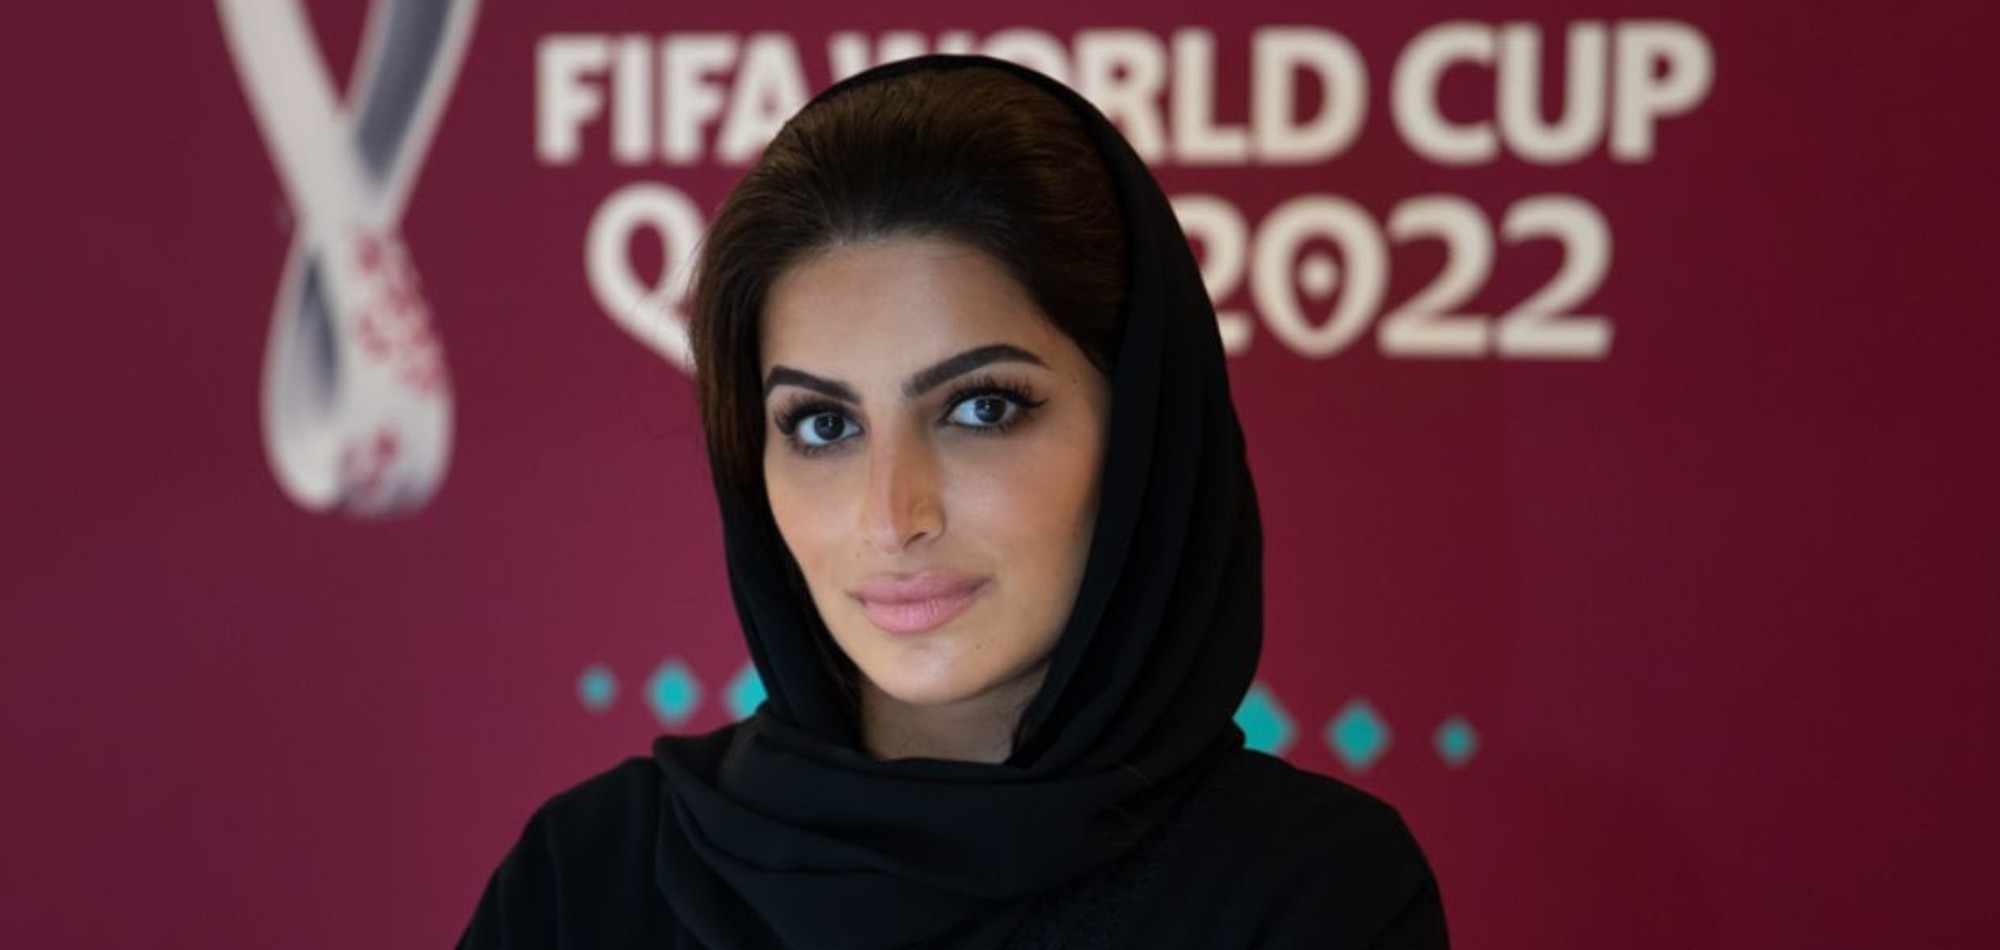 FIFA picks Qatari official as member of Dispute Resolution Committee